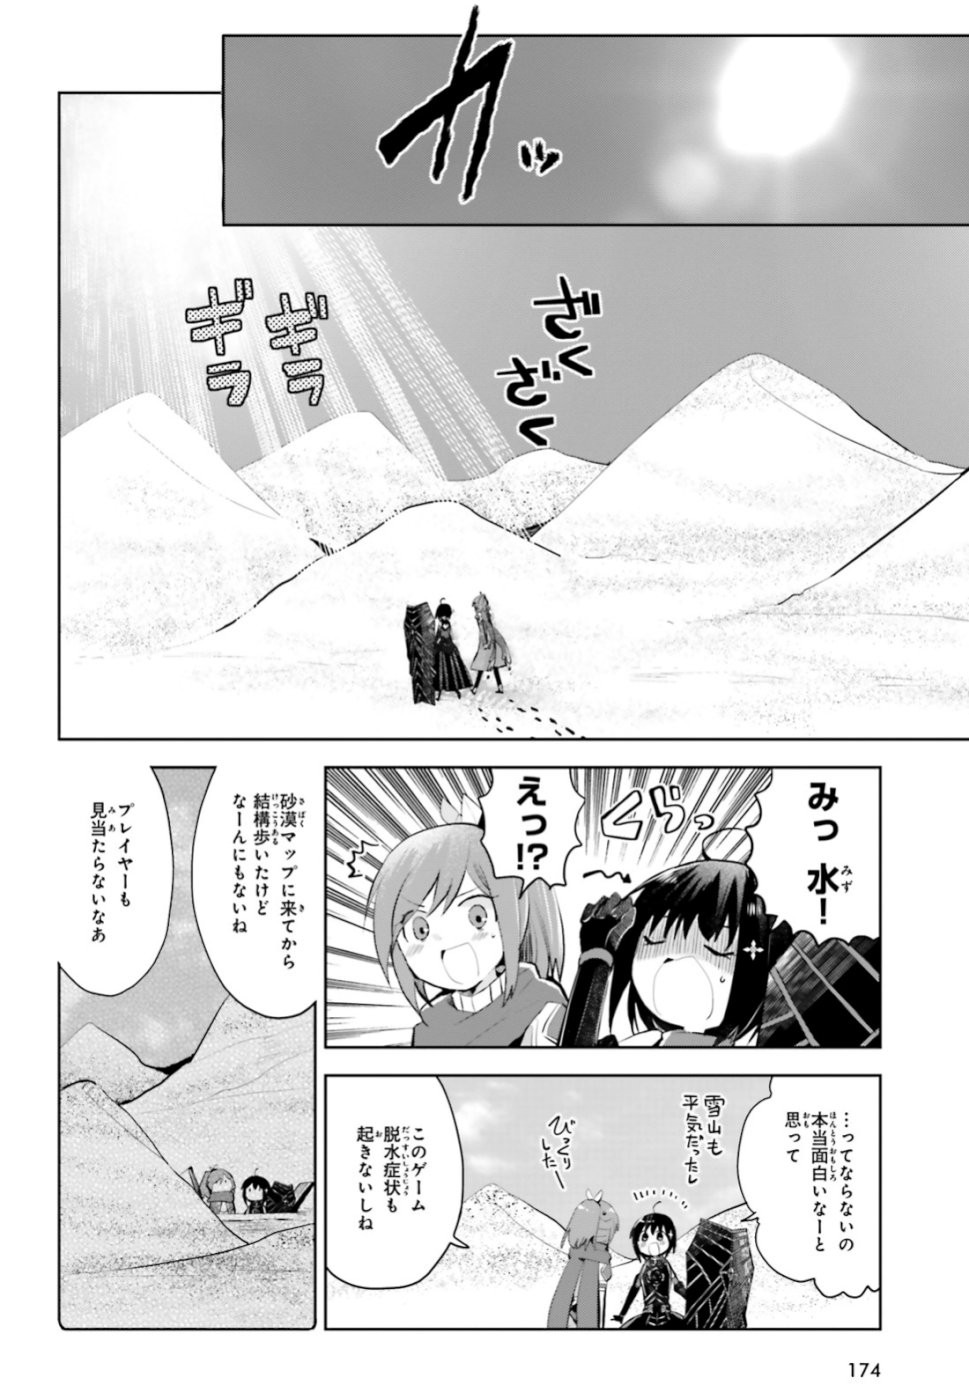 Itai-no-wa-Iya-nanode-Bougyo-Ryoku-ni-Kyokufuri-Shitai-to-Omoimasu - Chapter 14 - Page 2